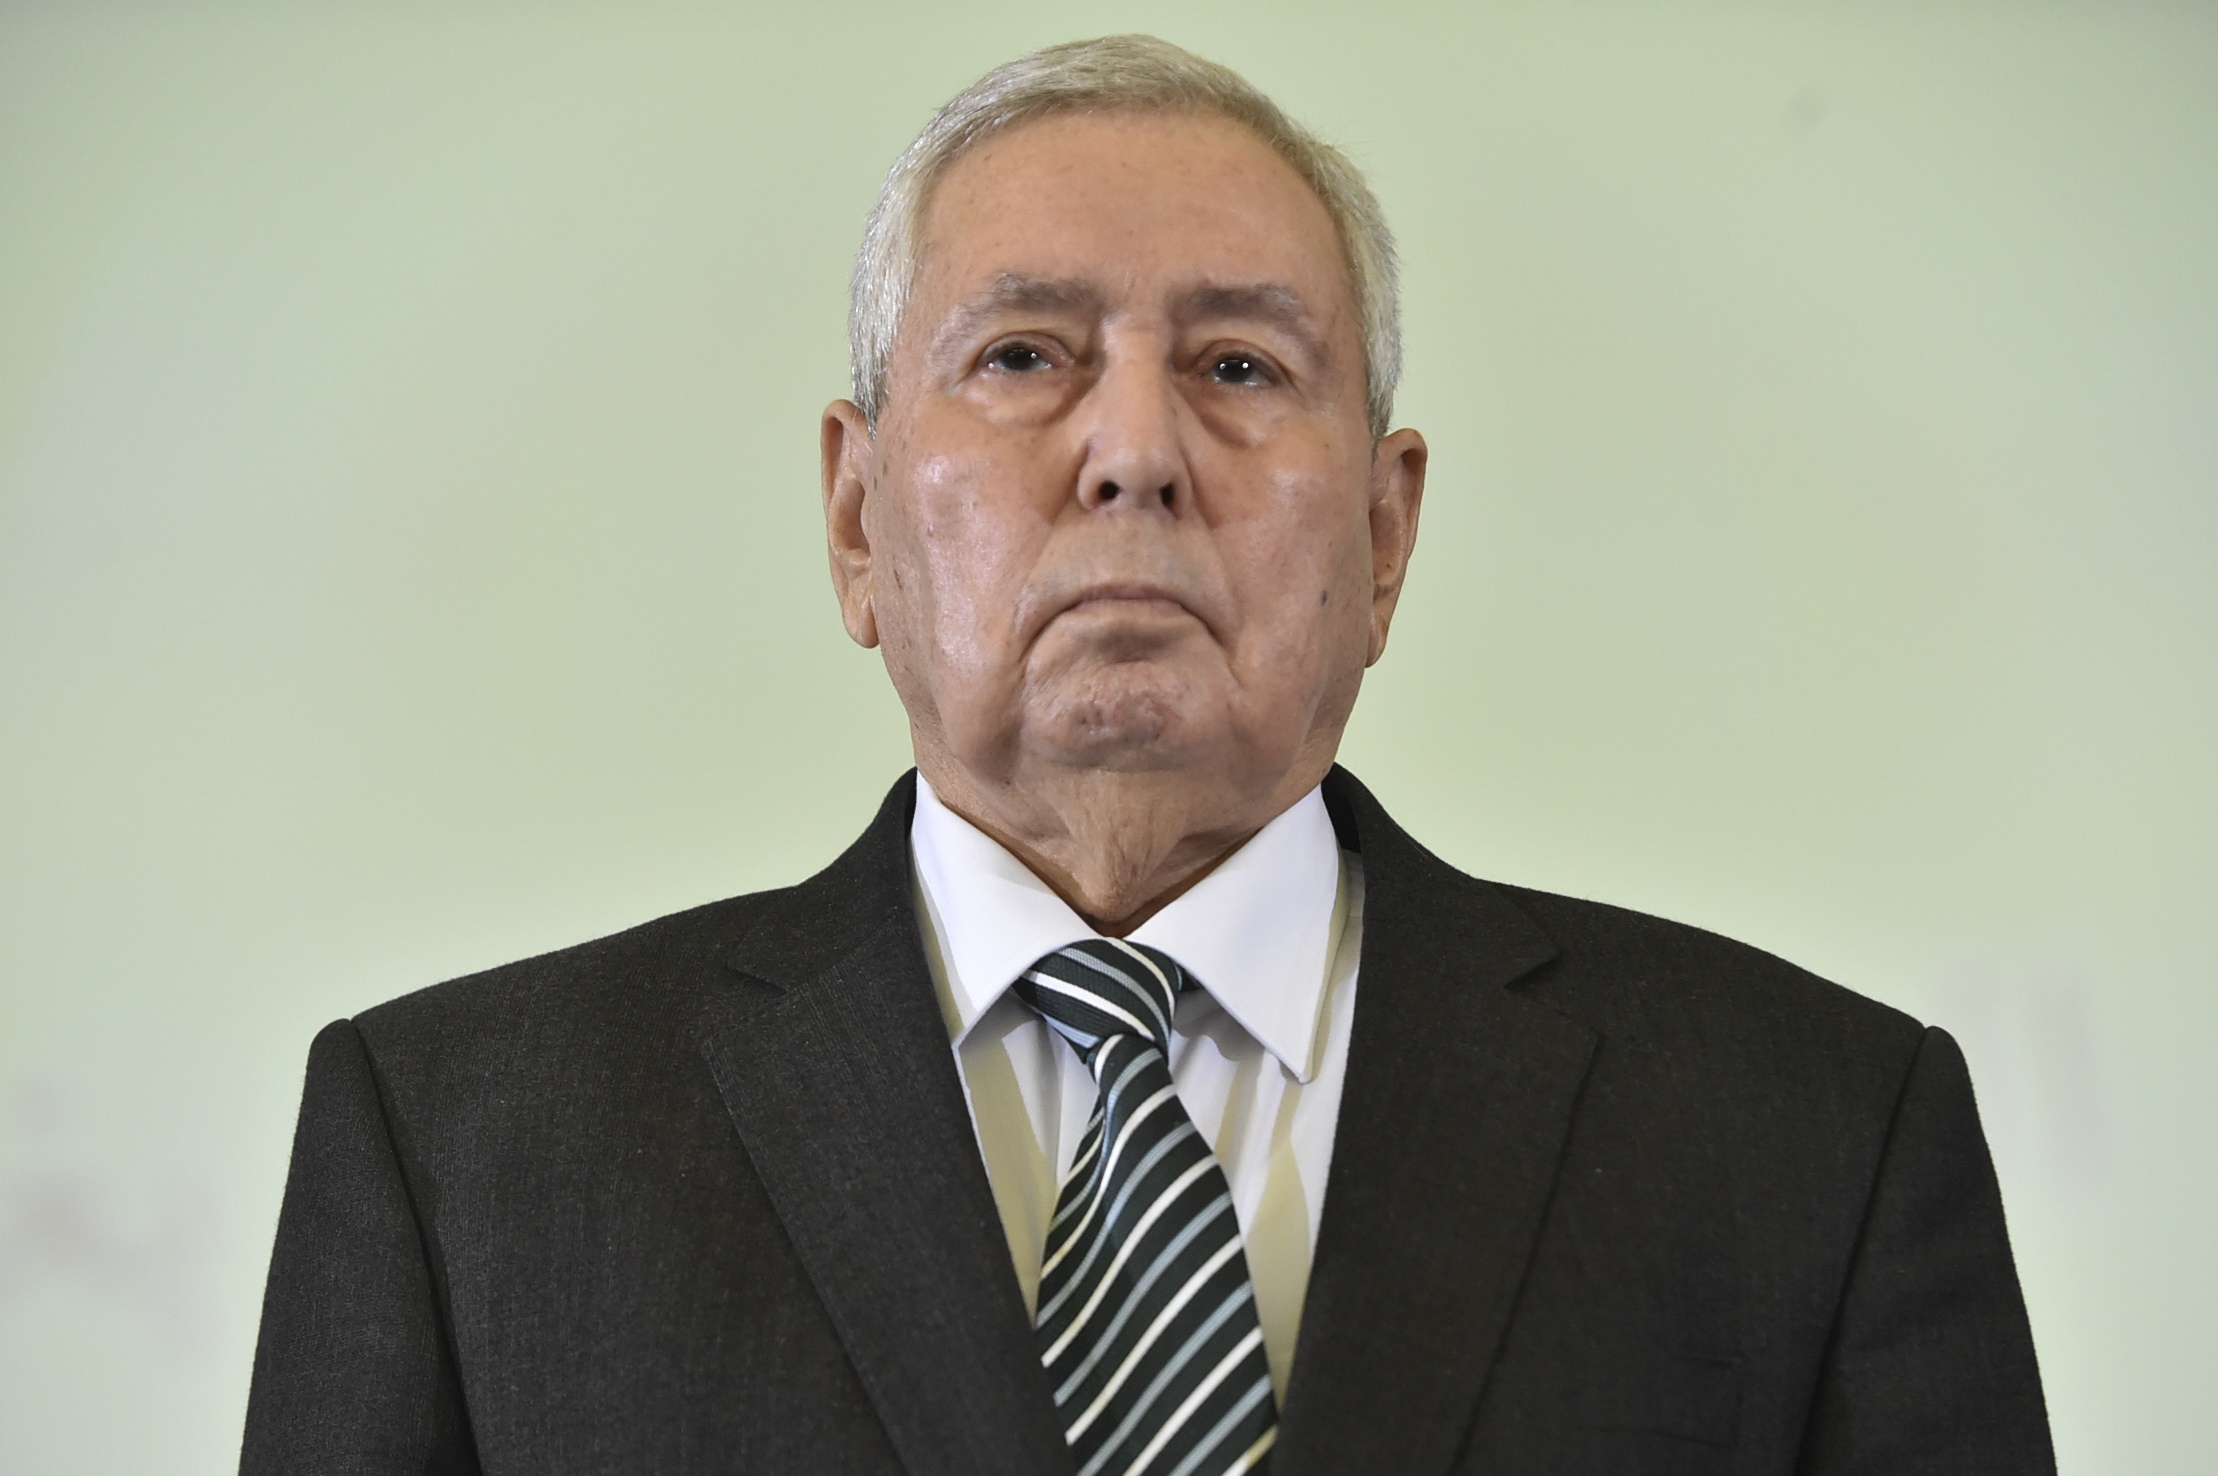 Abdelkader Bensalah has headed the Algerian senate for some 17 years (AFP)